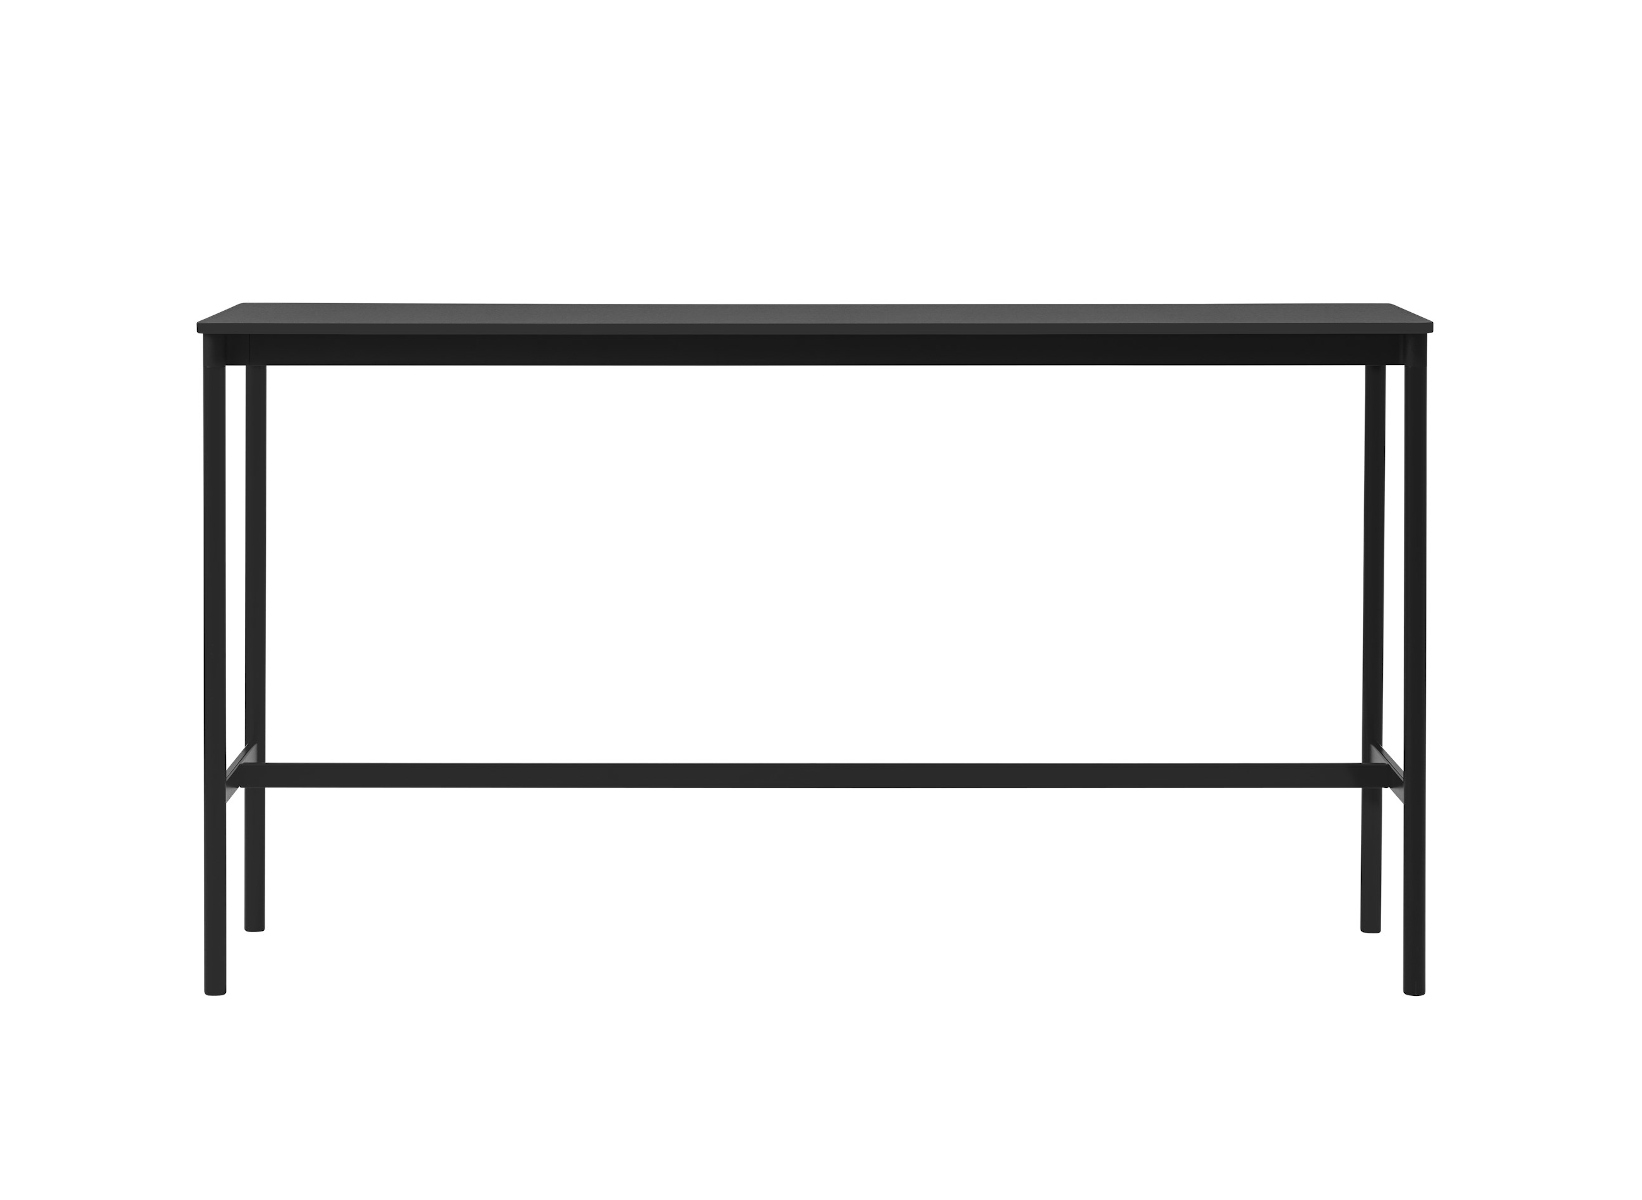 Base Stehtisch, 190 x 50 cm, höhe 105 cm, schwarz laminat / schwarz abs